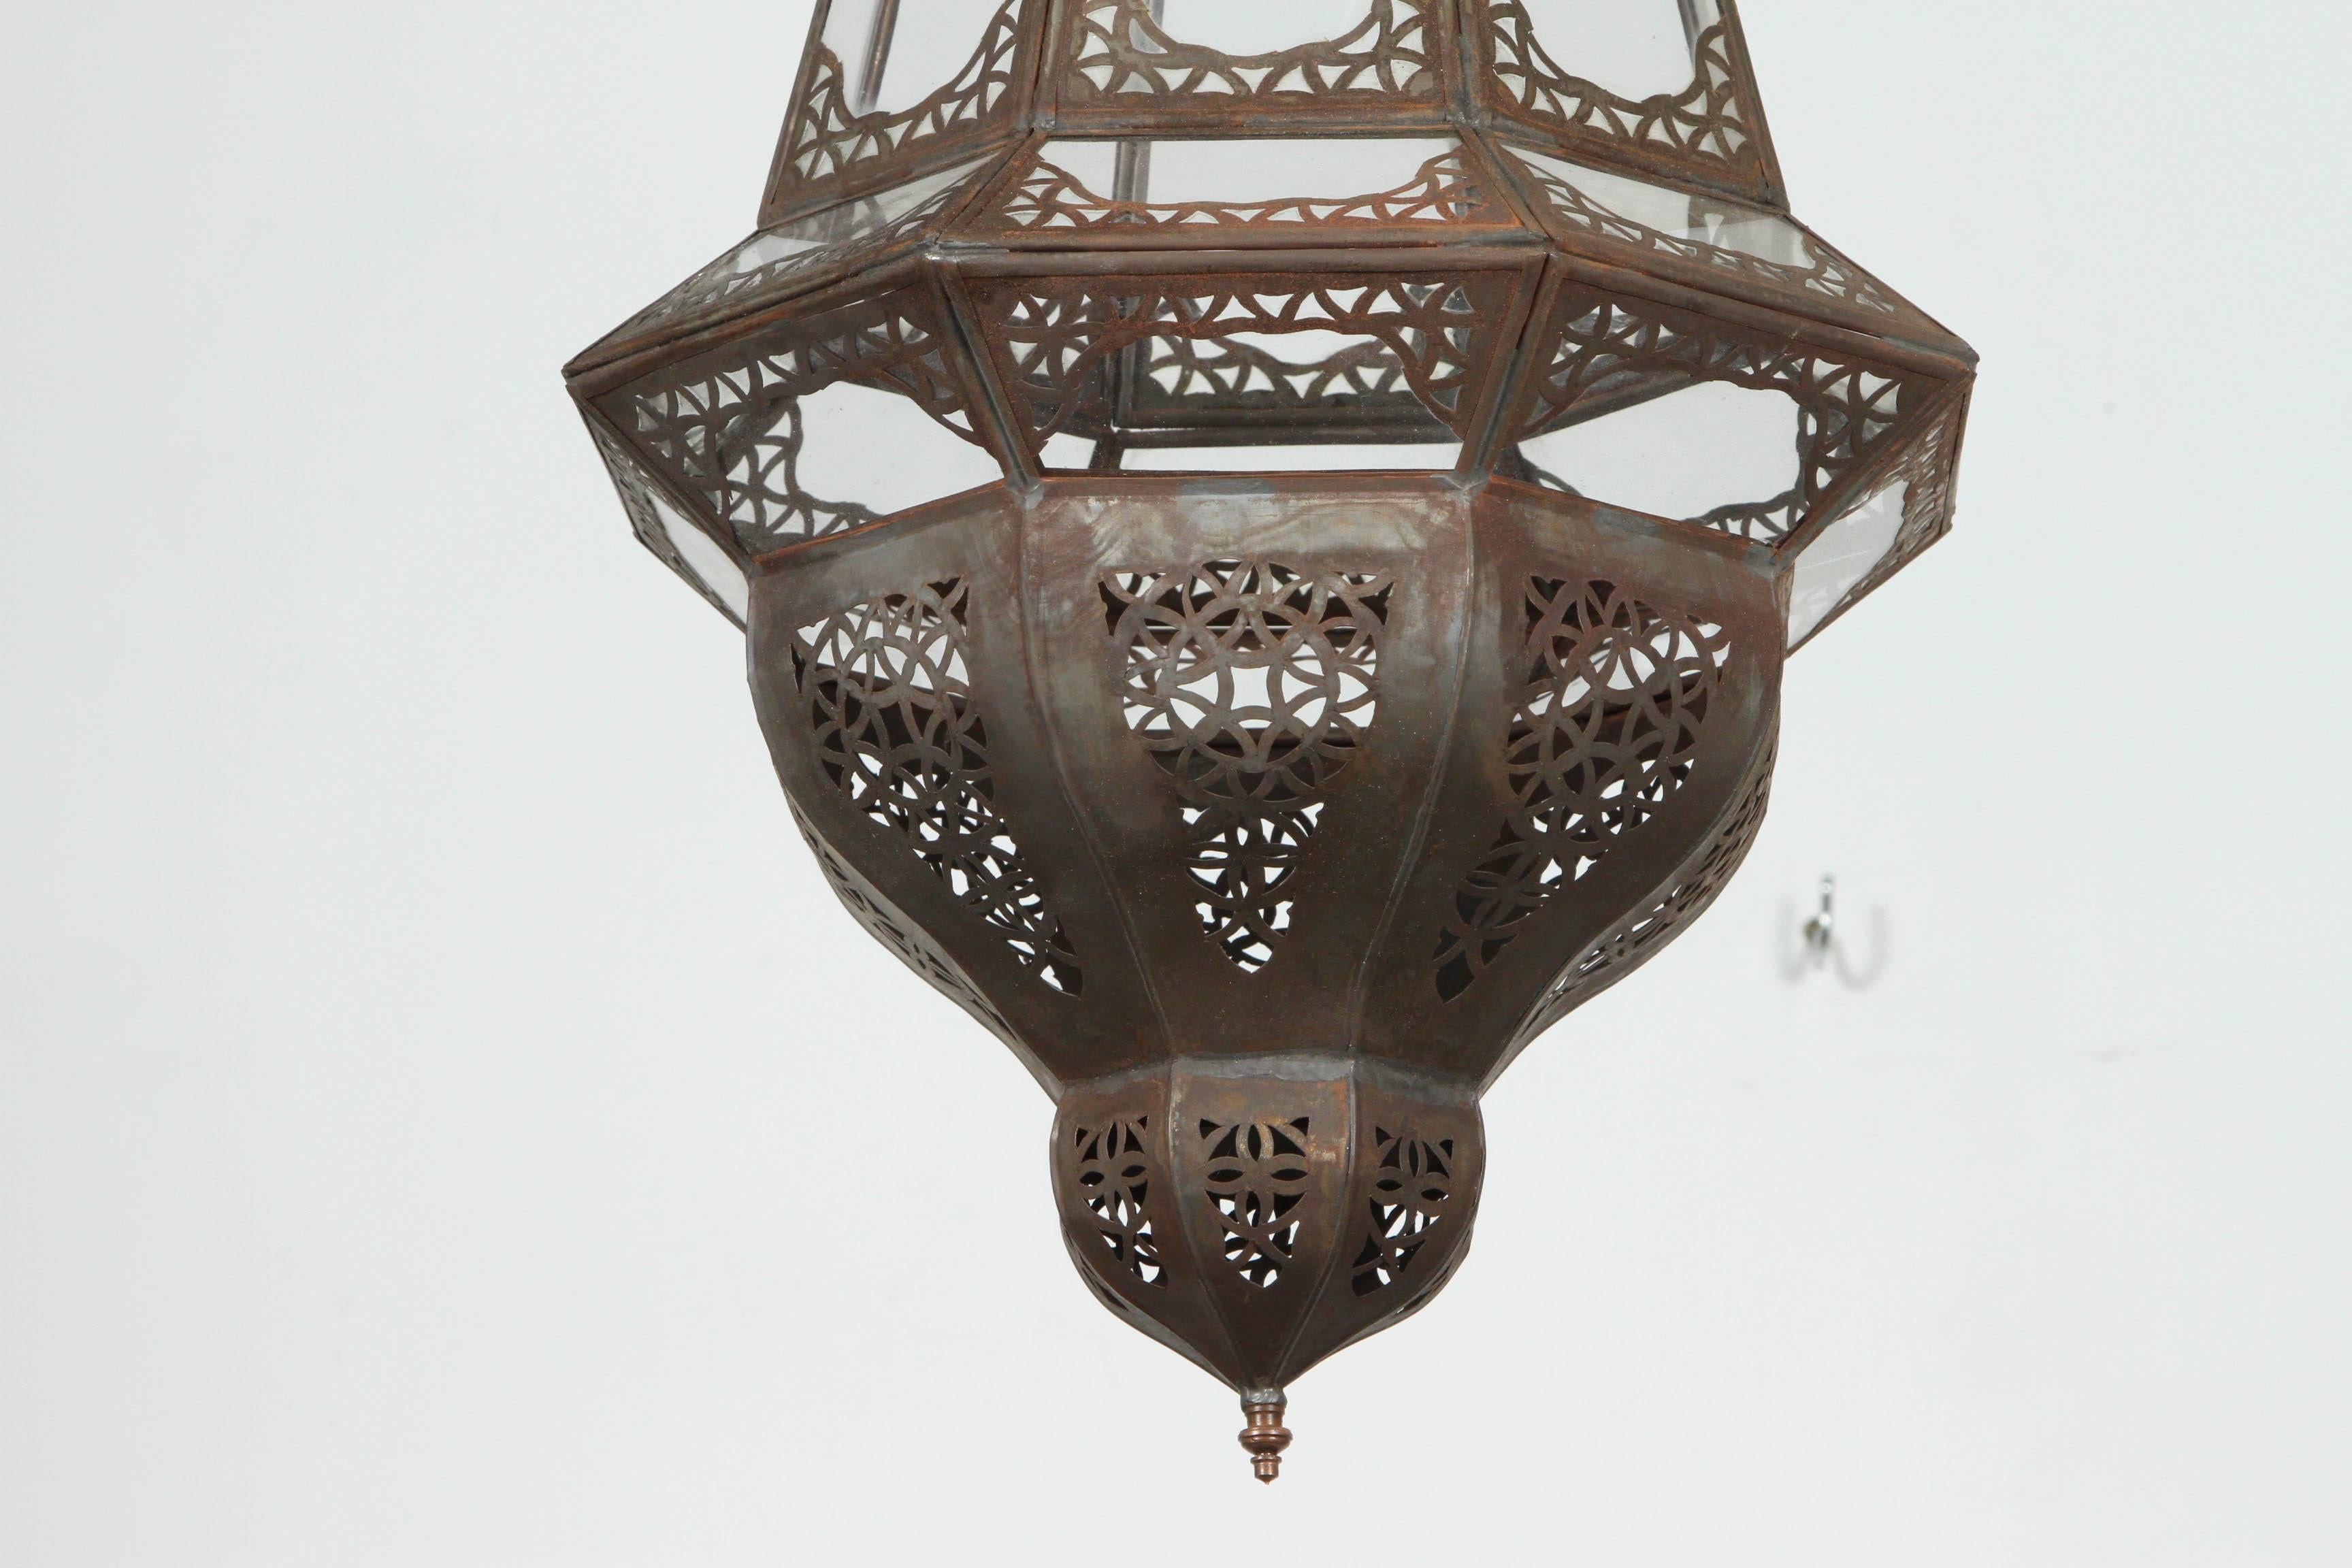 Elegante und stilvolle marokkanische Laterne aus klarem Glas, handgefertigt mit filigraner Arbeit im maurischen Stil.
Bringt Eleganz in jeden Raum.
Kann als Wandleuchter oder Kronleuchter von der Decke hängend verwendet werden.
Neu verdrahtet mit 1